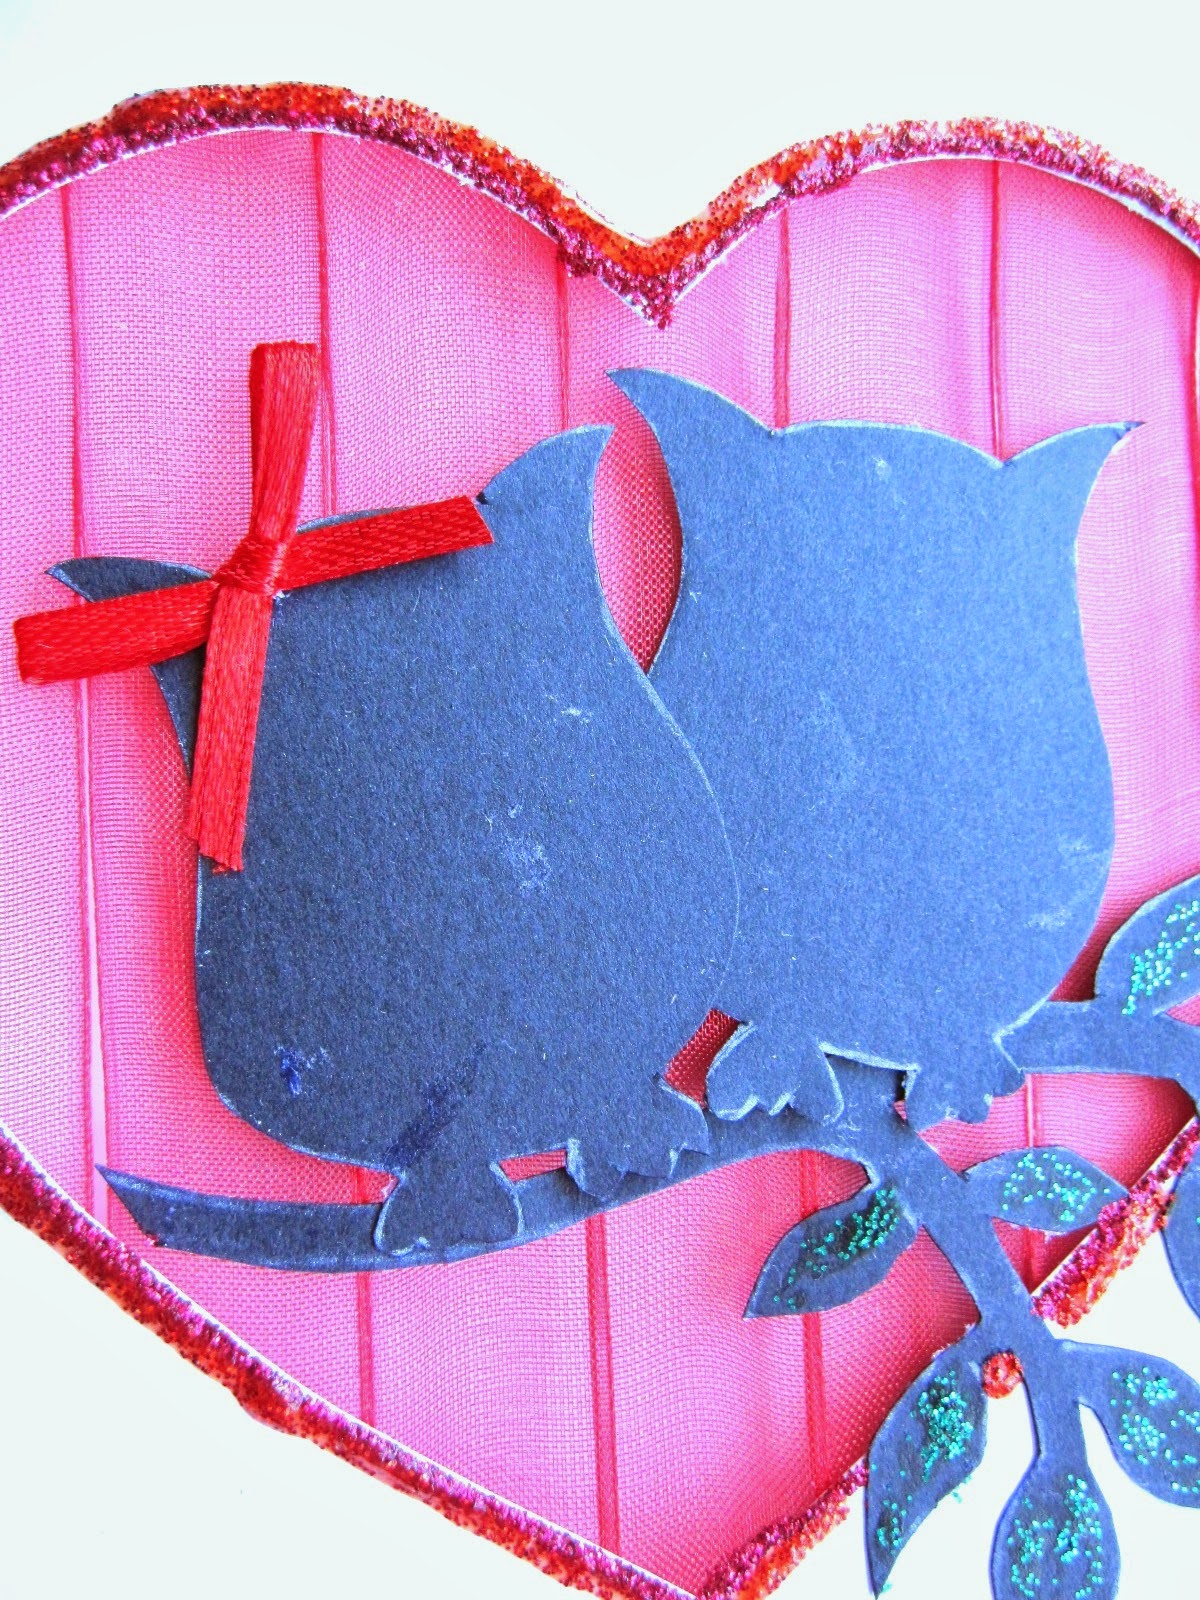 detalle de tarjeta blanca de felicitación con corazón calado con fondo de gasa roja y siluetas delante de dos búhos y rama de árbol con detalles decorados con glitter glue rojo y verde